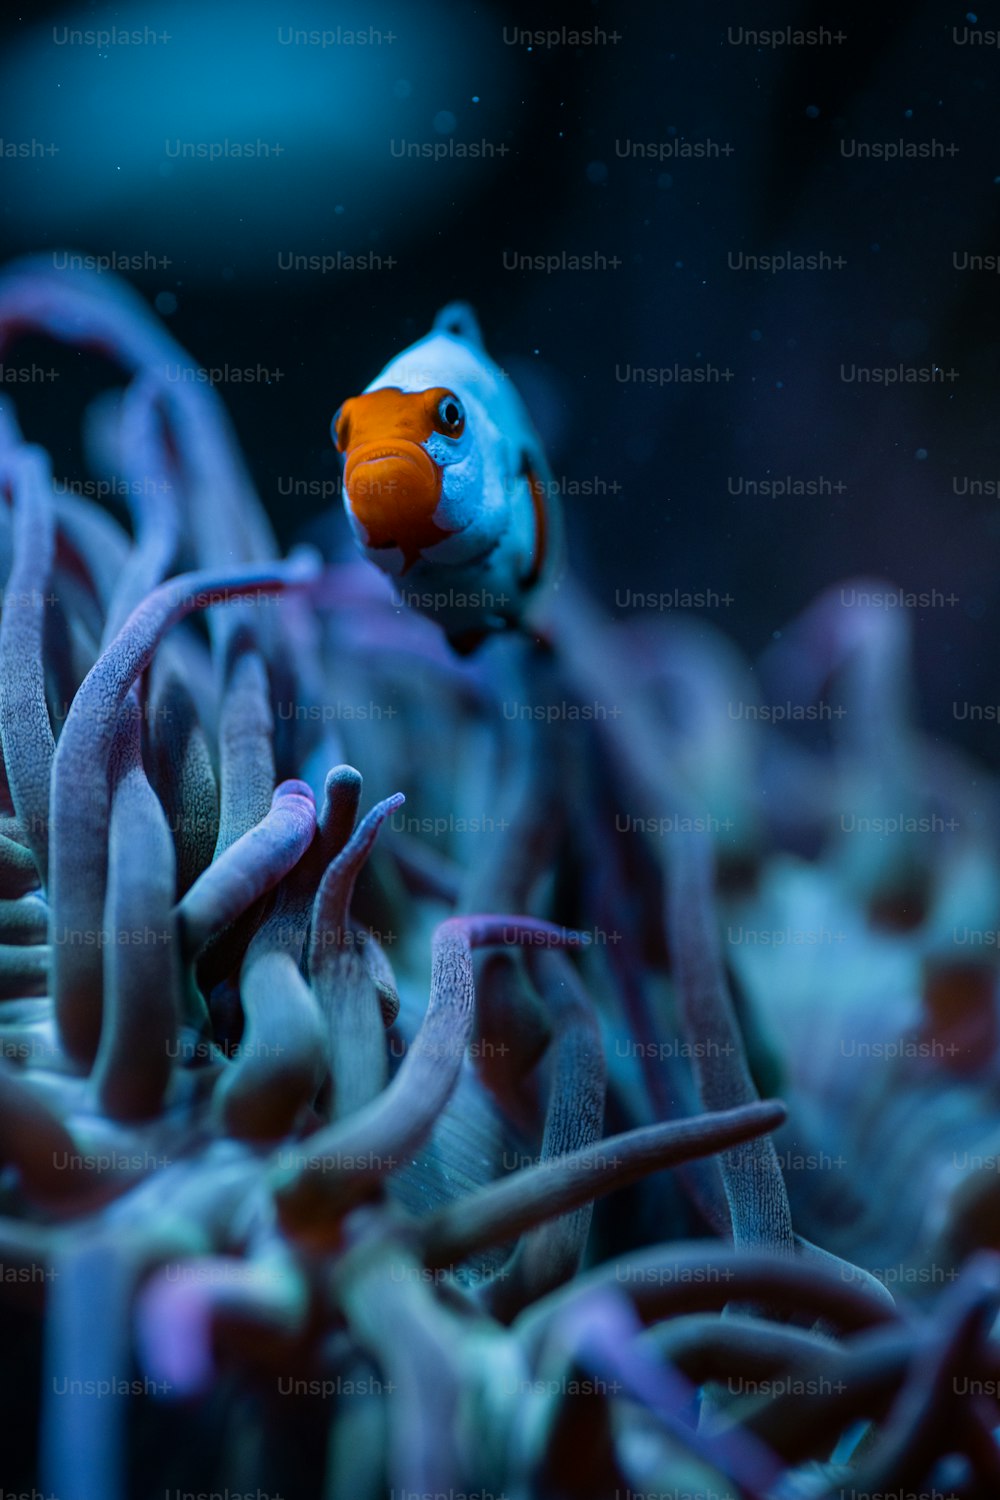 Un pesce arancione e blu in un acquario